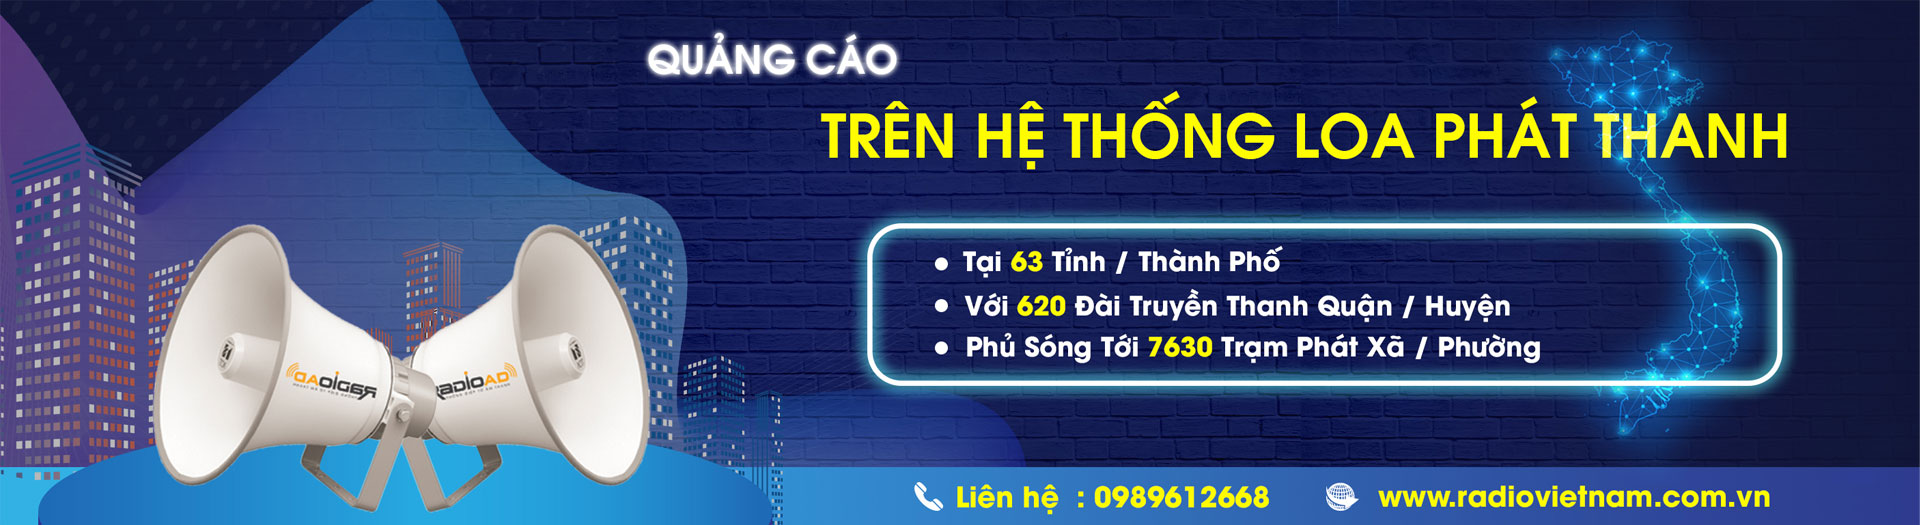 Quảng cáo Loa Phát Thanh